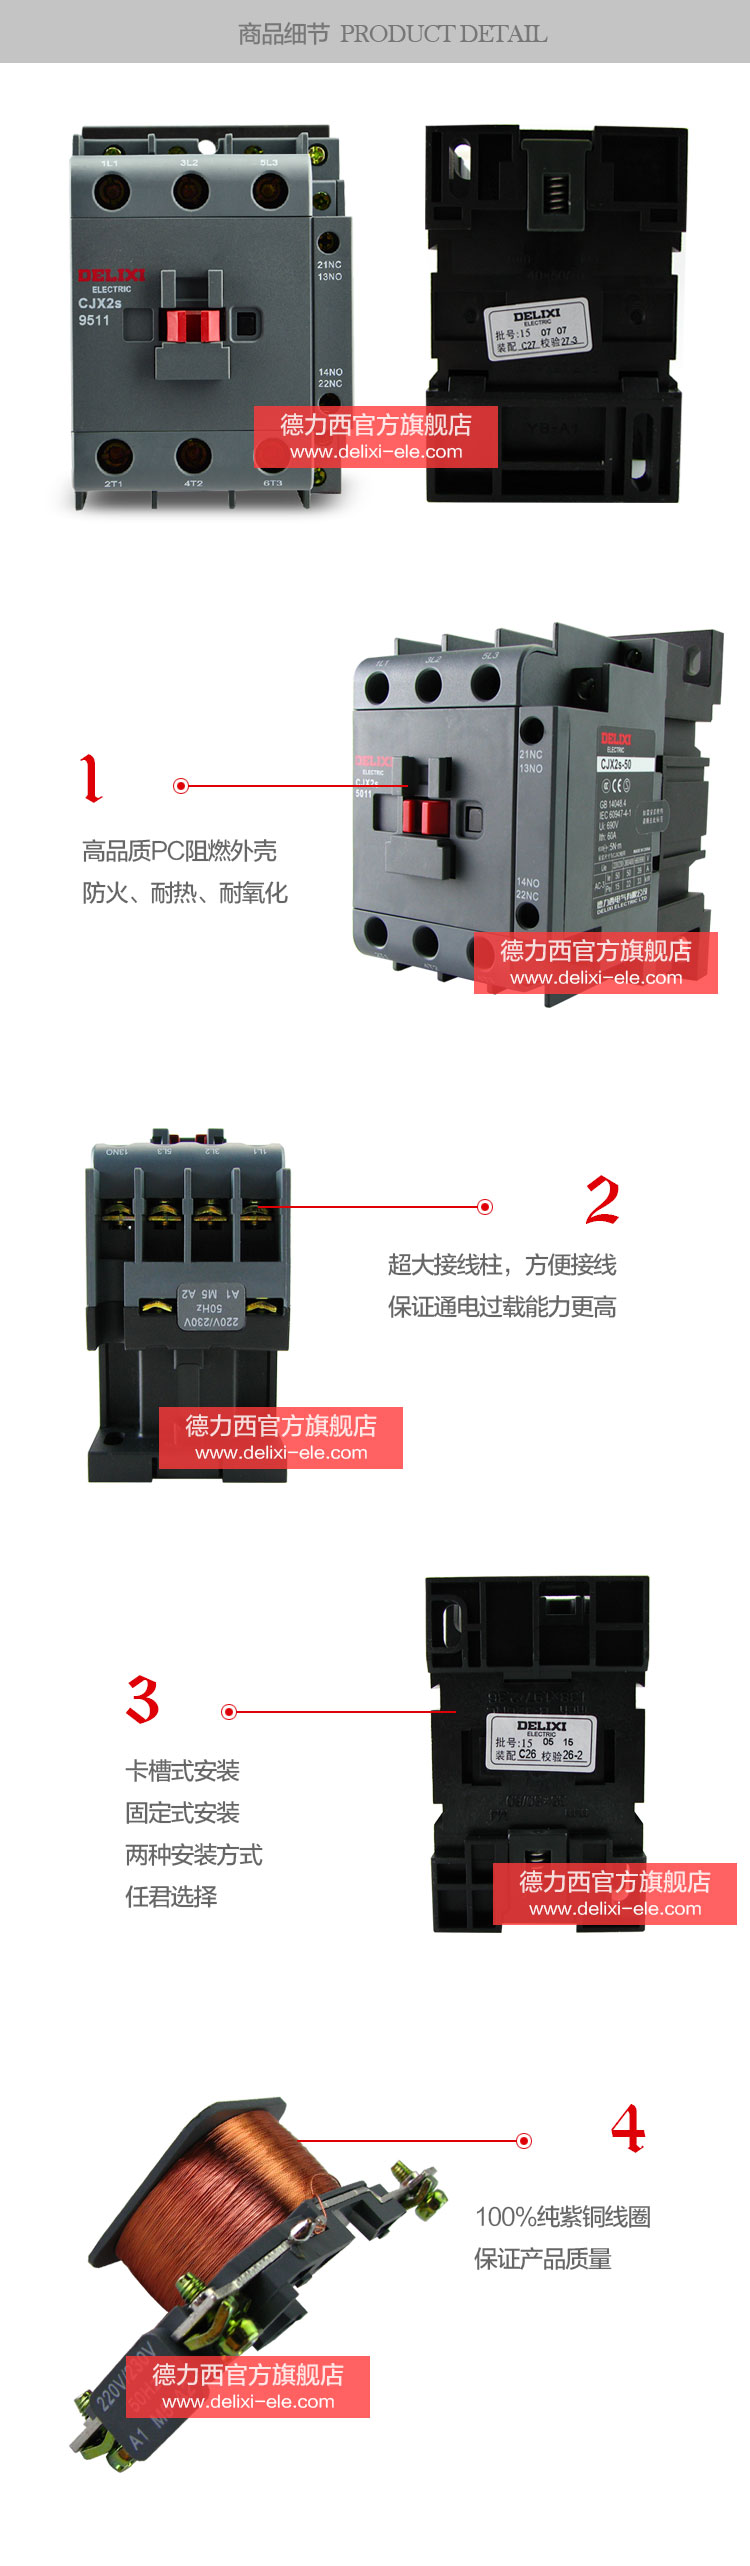 德力西交流接触器CJX2S-5011产品细节展示高品质阻燃材料，防火耐热耐氧化，超大接线柱卡槽式安装，100%纯紫铜线圈